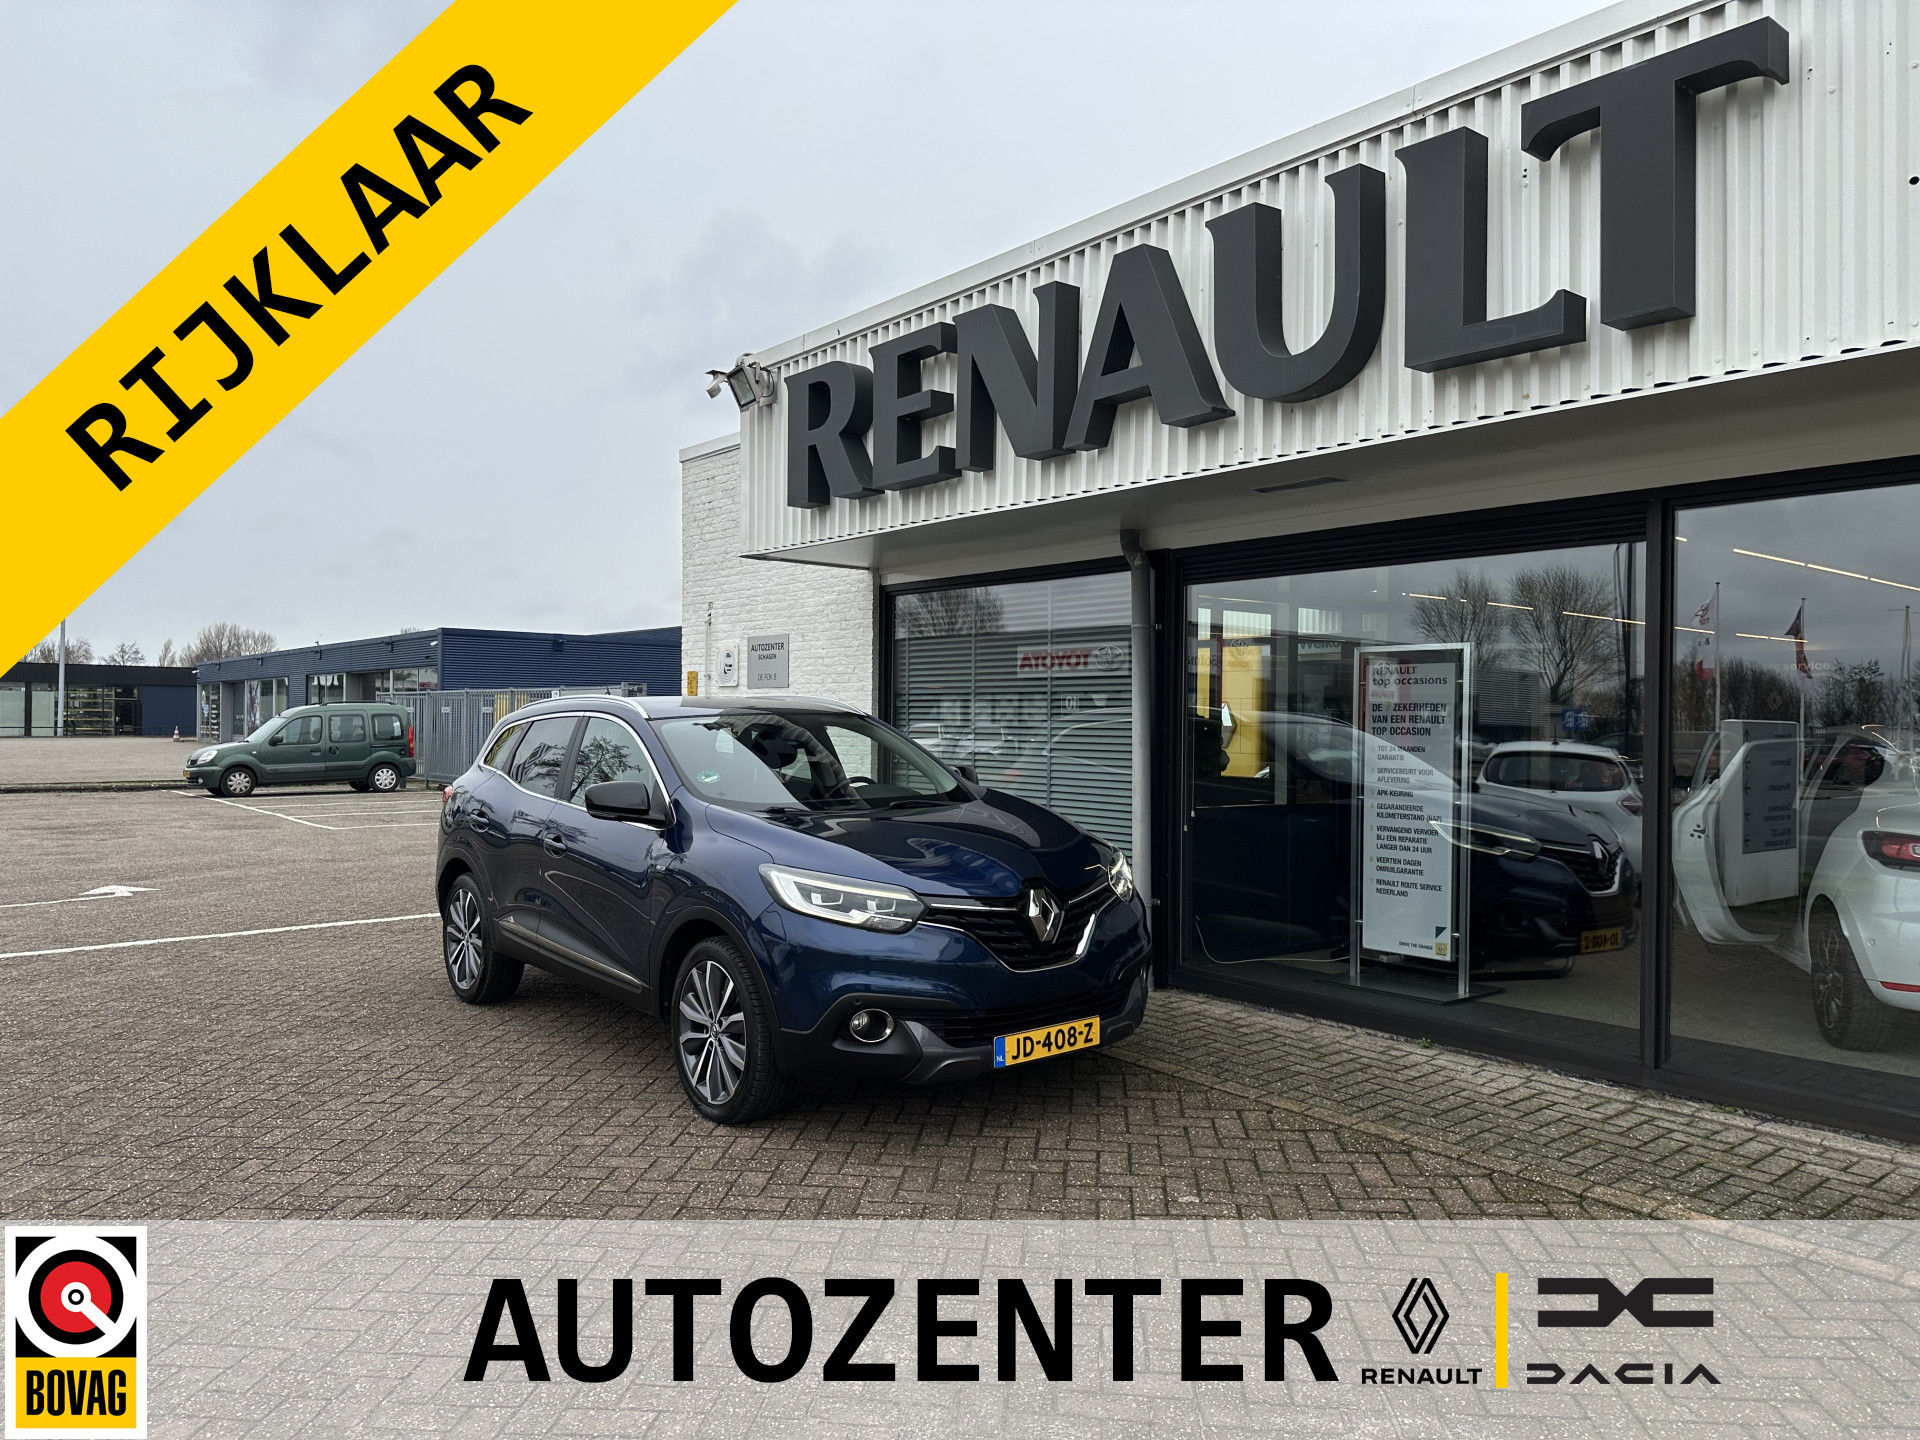 Renault Kadjar Bose Tce 130 | Pack Easy Park Assist | trekhaak | full-LED | tijdelijk gratis Top Afleverpakket twv Eur 695 bij viaBOVAG.nl